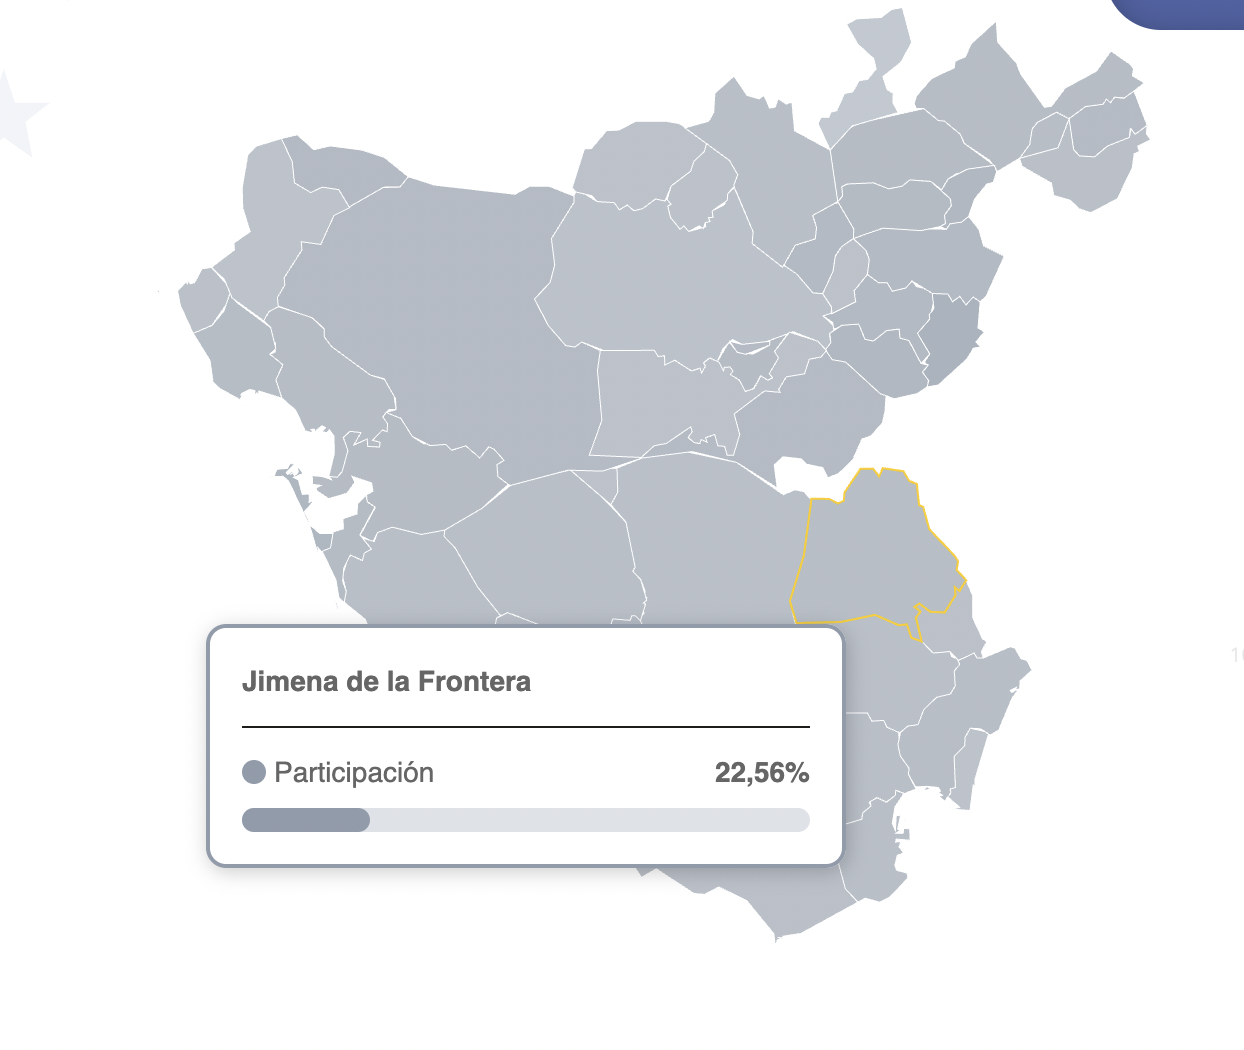 La participación en Jimena a las 14:00 cae un 13% respecto a 2019